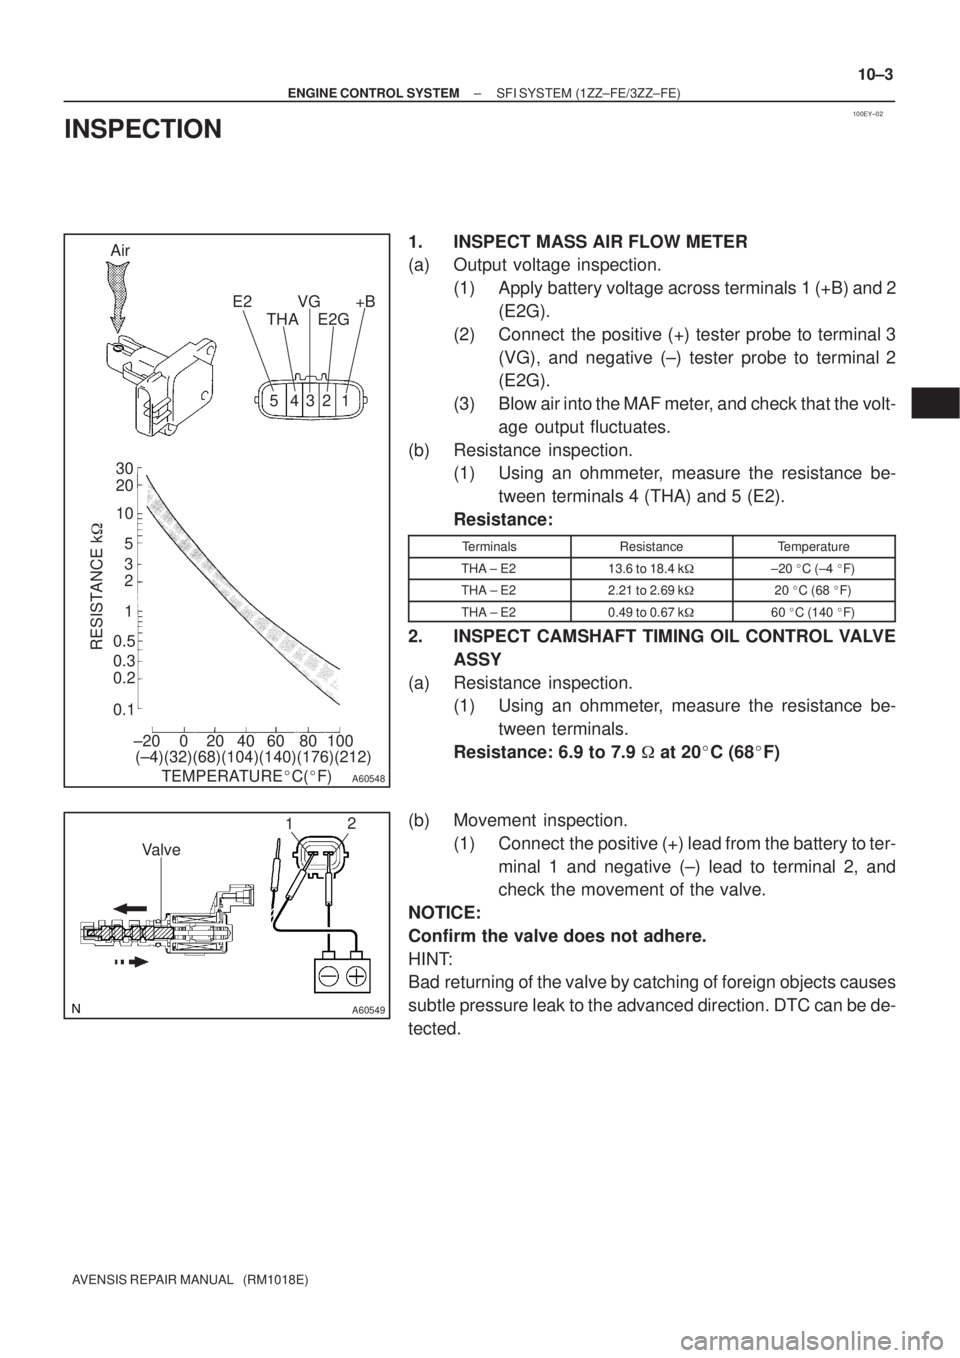 TOYOTA AVENSIS 2005  Service Repair Manual 100EY±02
A60548
Air
E2
THAVG
E2G+B
30
20
10
5
3
2
1
0.5
0.3
0.2
0.1
RESISTANCE k
±20 0 20 40 60 80 10054321
(±4)(32)(68)(104)(140)(176)(212)
TEMPERATUREC(F)
A60549
12
Valve
± ENGINE CONTROL SYS